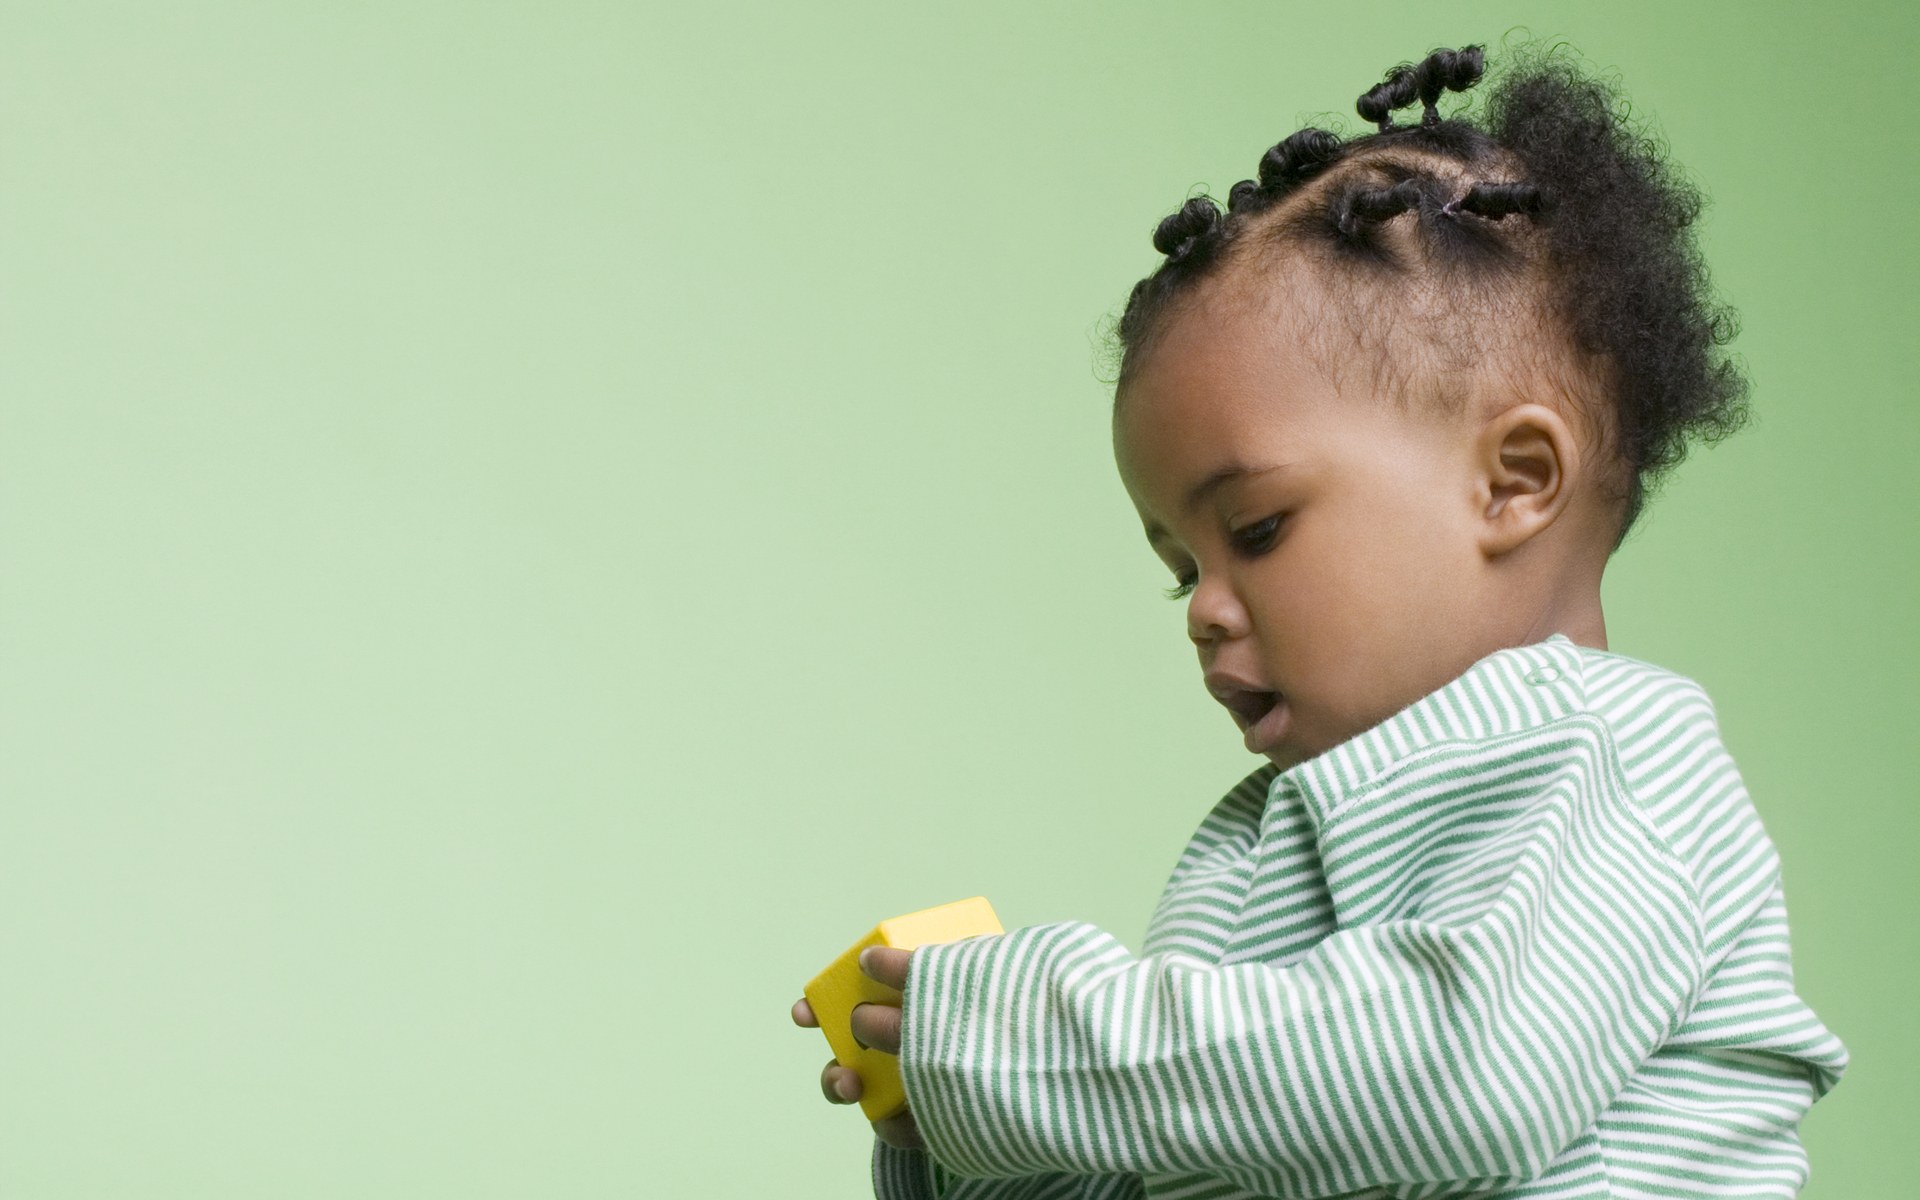 壁纸1400×1050可爱婴儿摄影 黑人小宝宝图片壁纸壁纸,爱与纯真-可爱婴儿儿童摄影壁纸壁纸图片-摄影壁纸-摄影图片素材-桌面壁纸